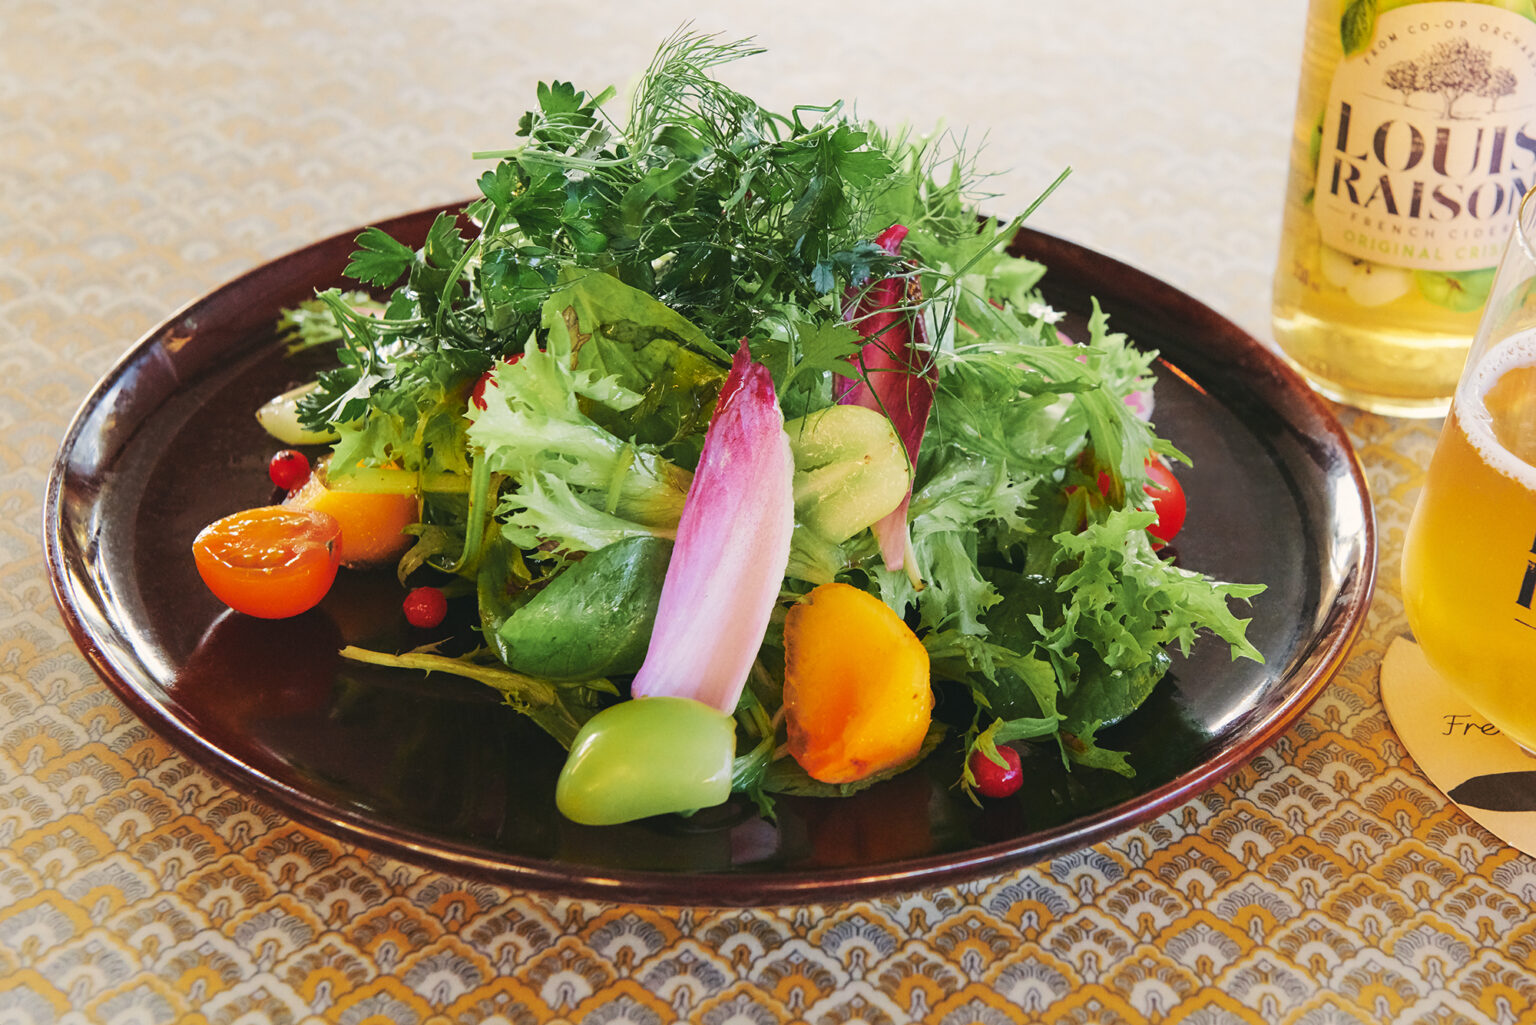 「季節野菜とニイクラハーブのガーデンサラダ」1,000円。